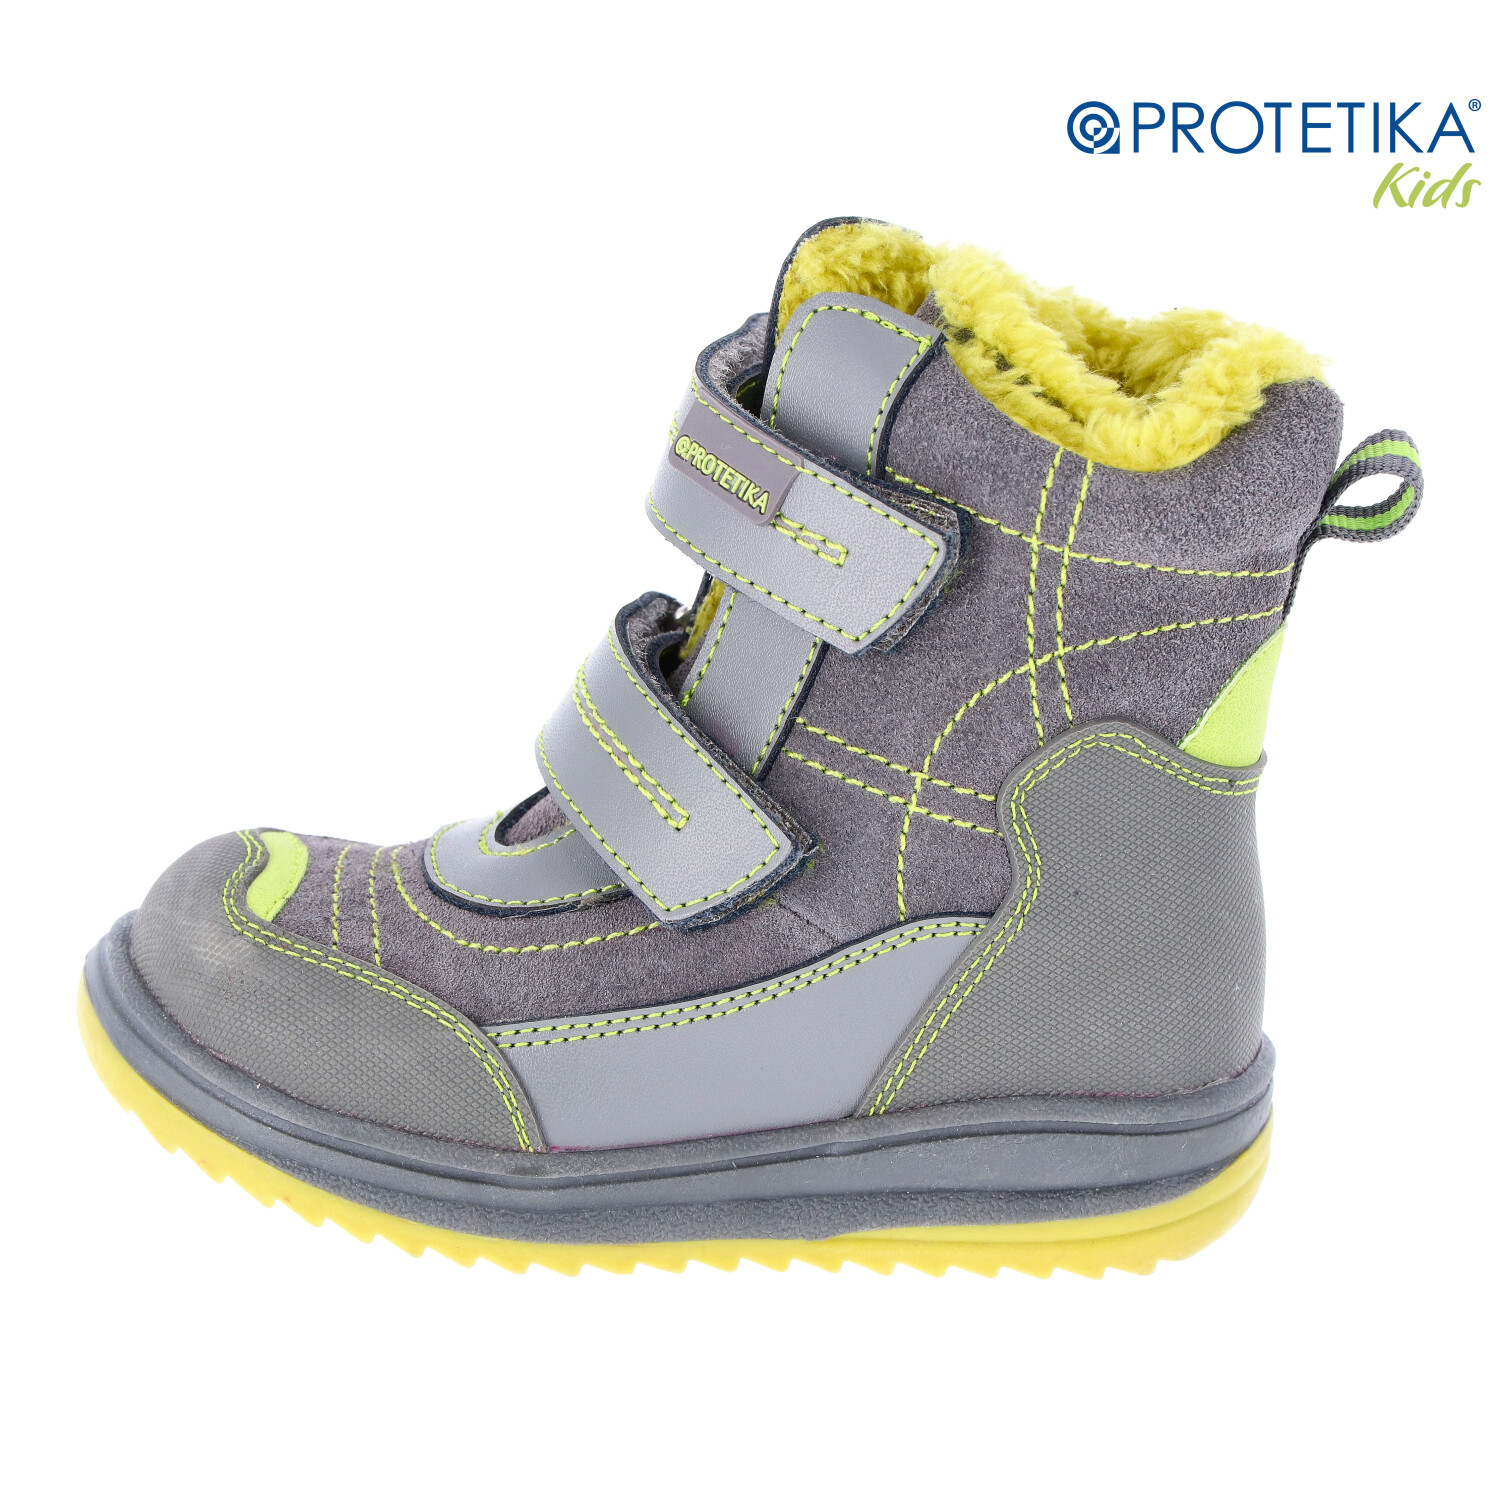 Protetika - zimné topánky ROKY - zateplené kožušinkou